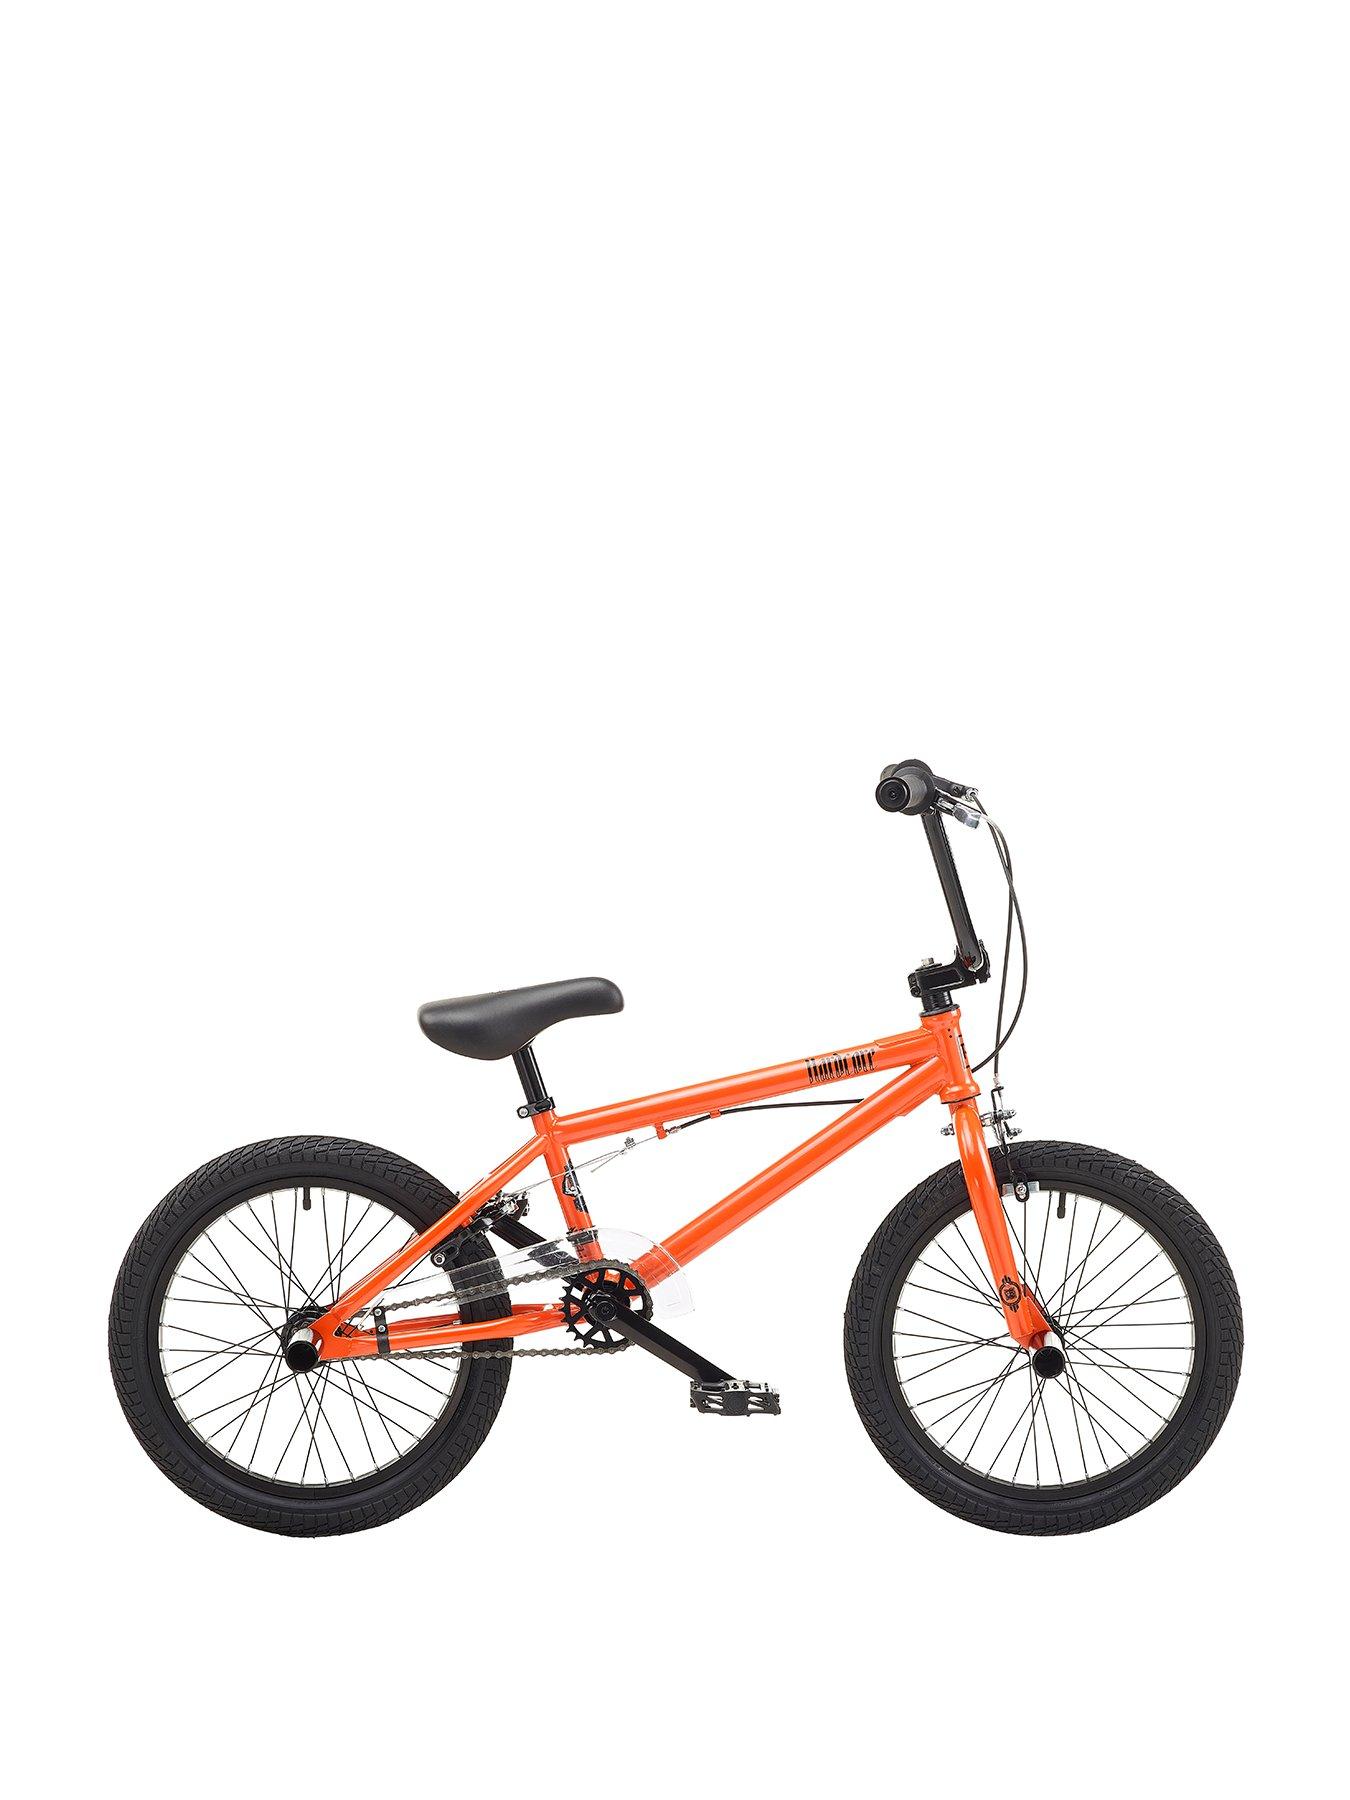 17 inch bmx bike